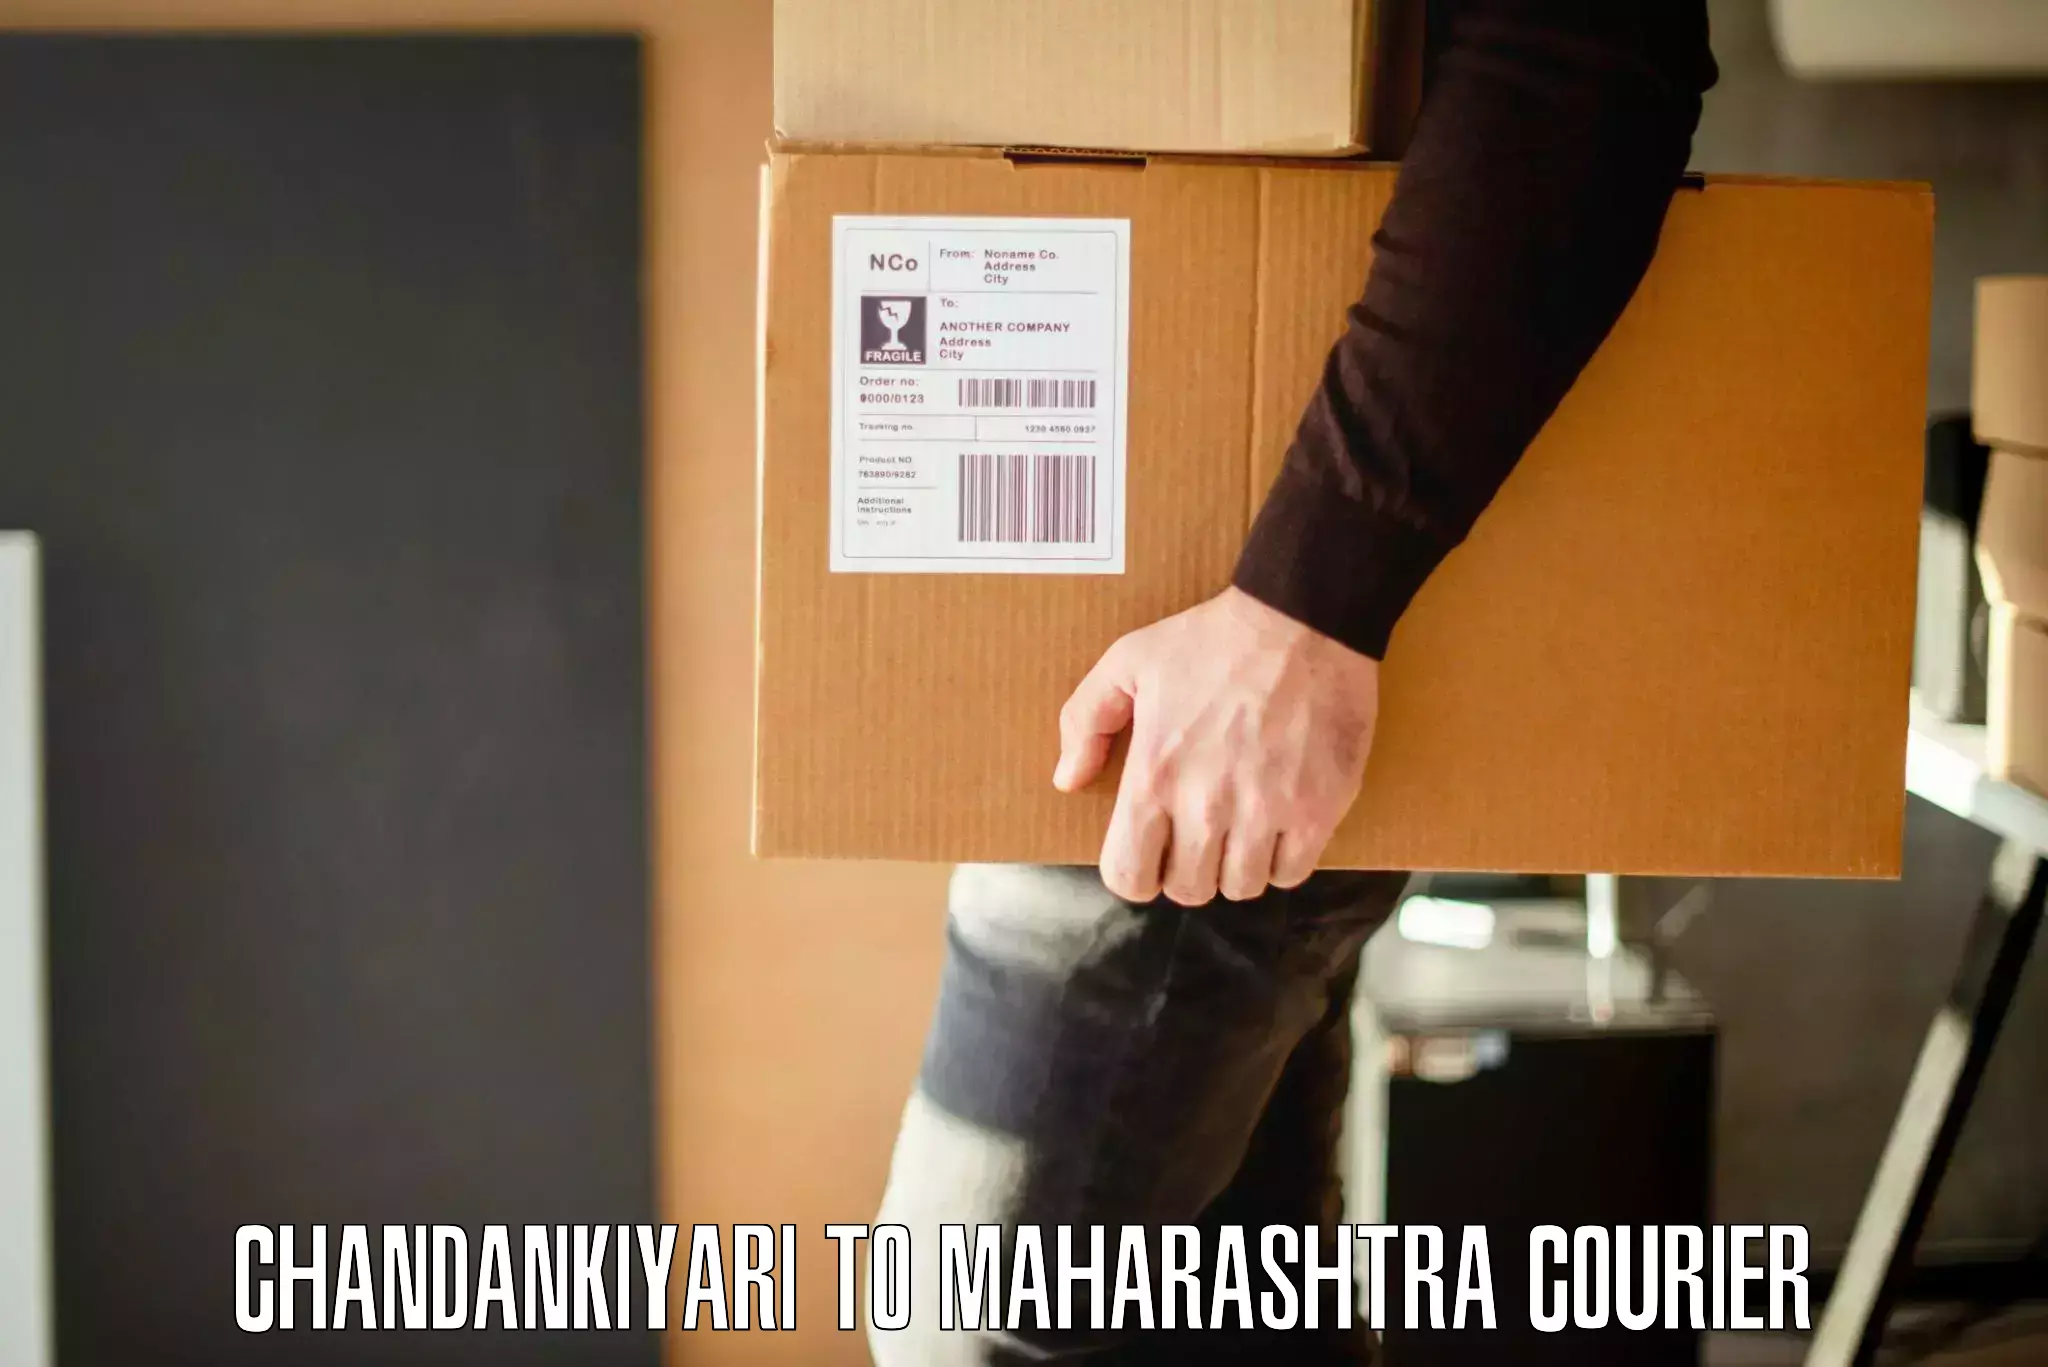 Furniture shipping services Chandankiyari to Karjat